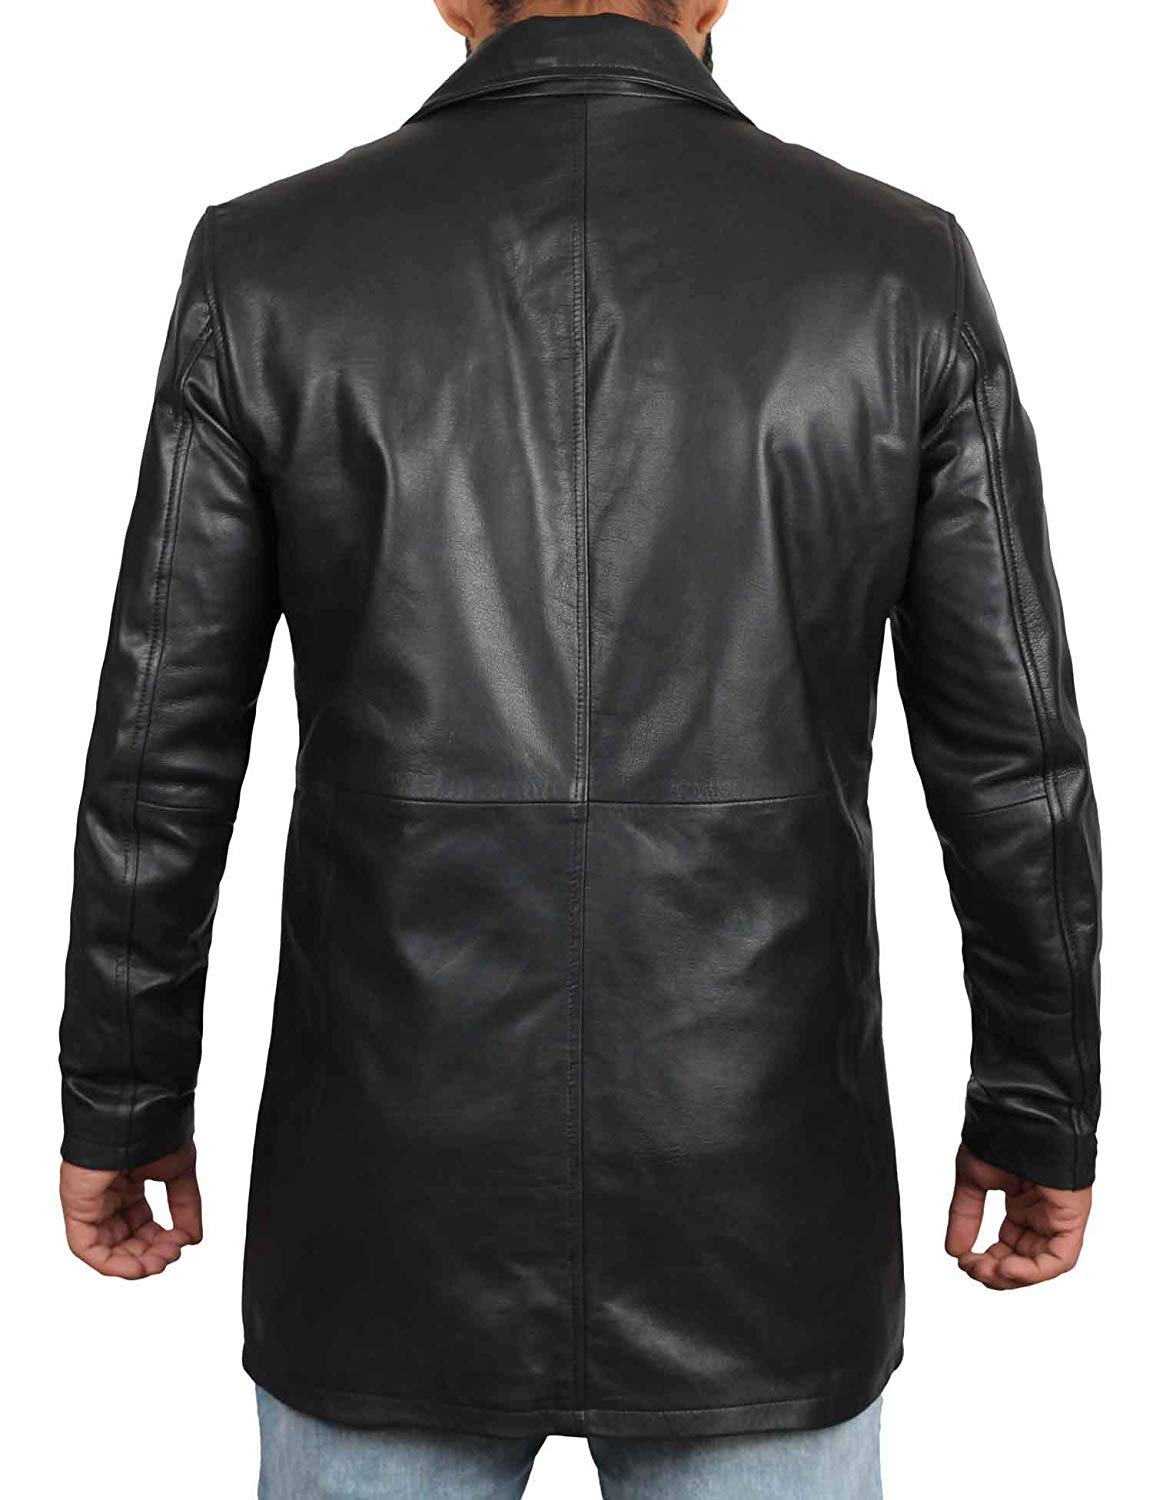 Blingsoul Leather Coats for Men - Vintage Style Long Leather Jacket Men